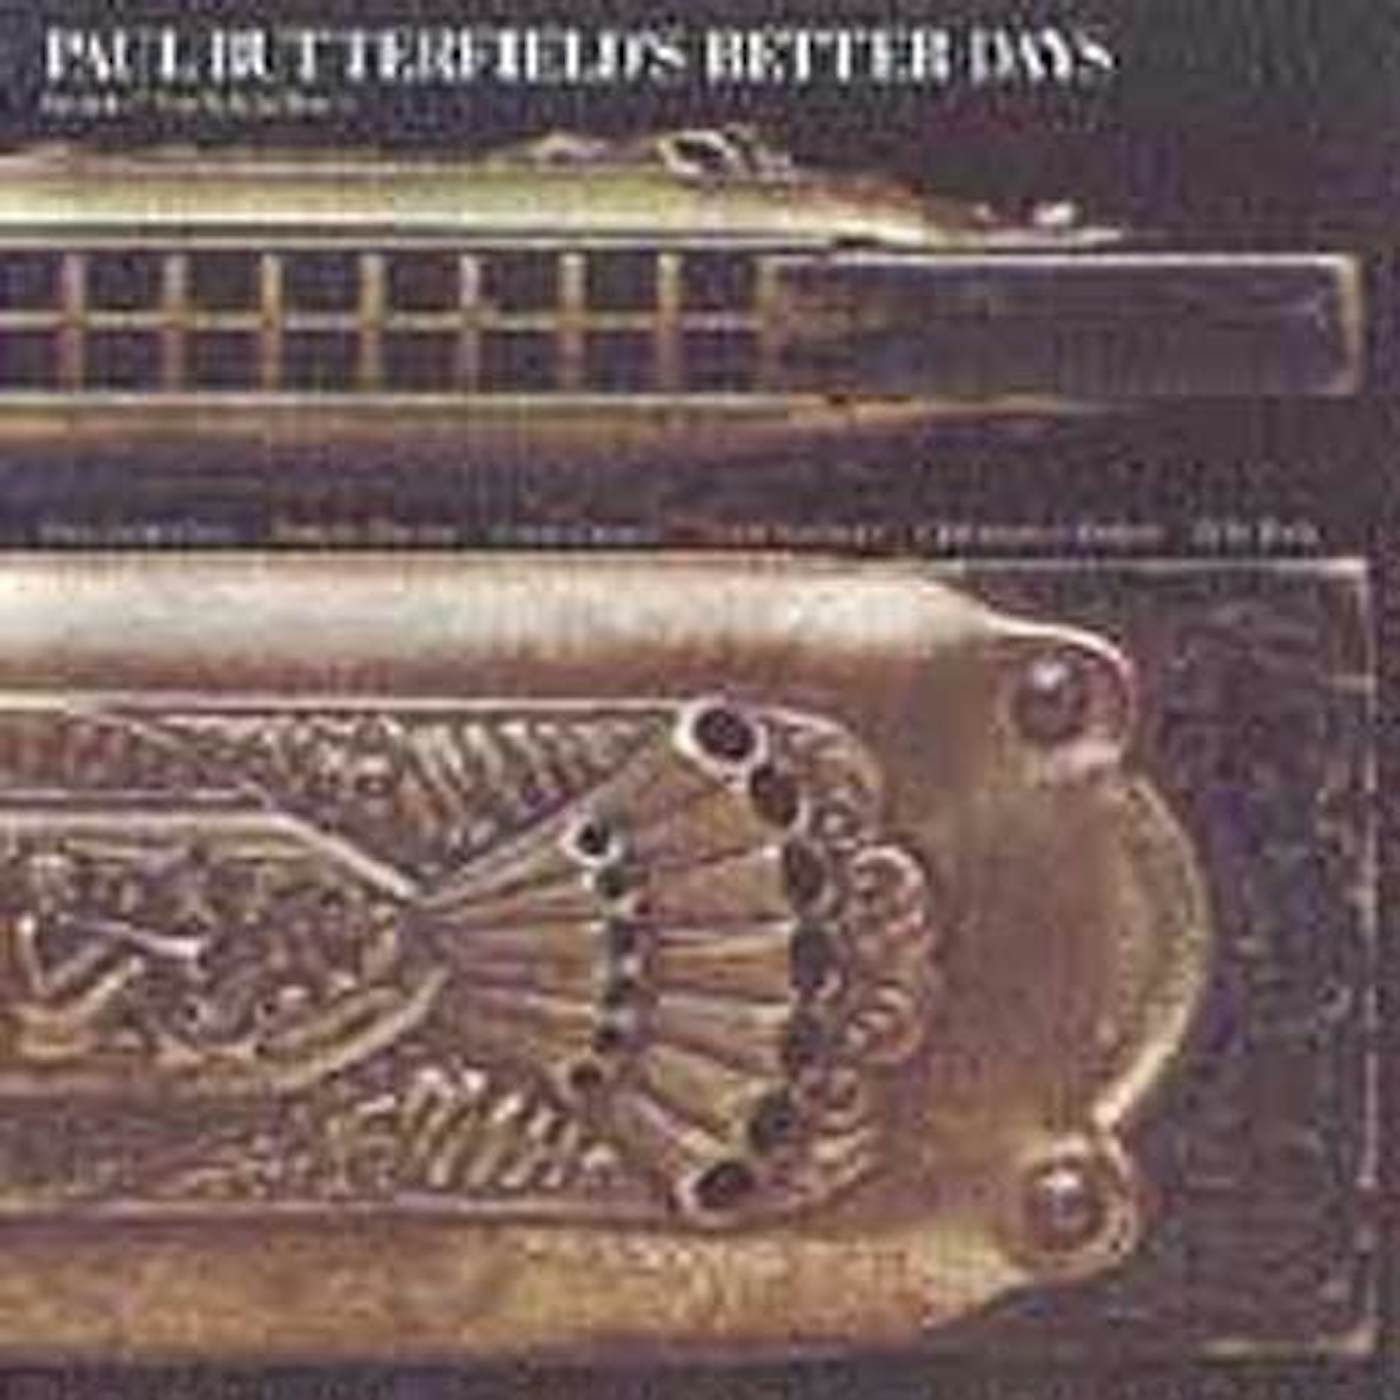 Paul Butterfield BETTER DAYS CD